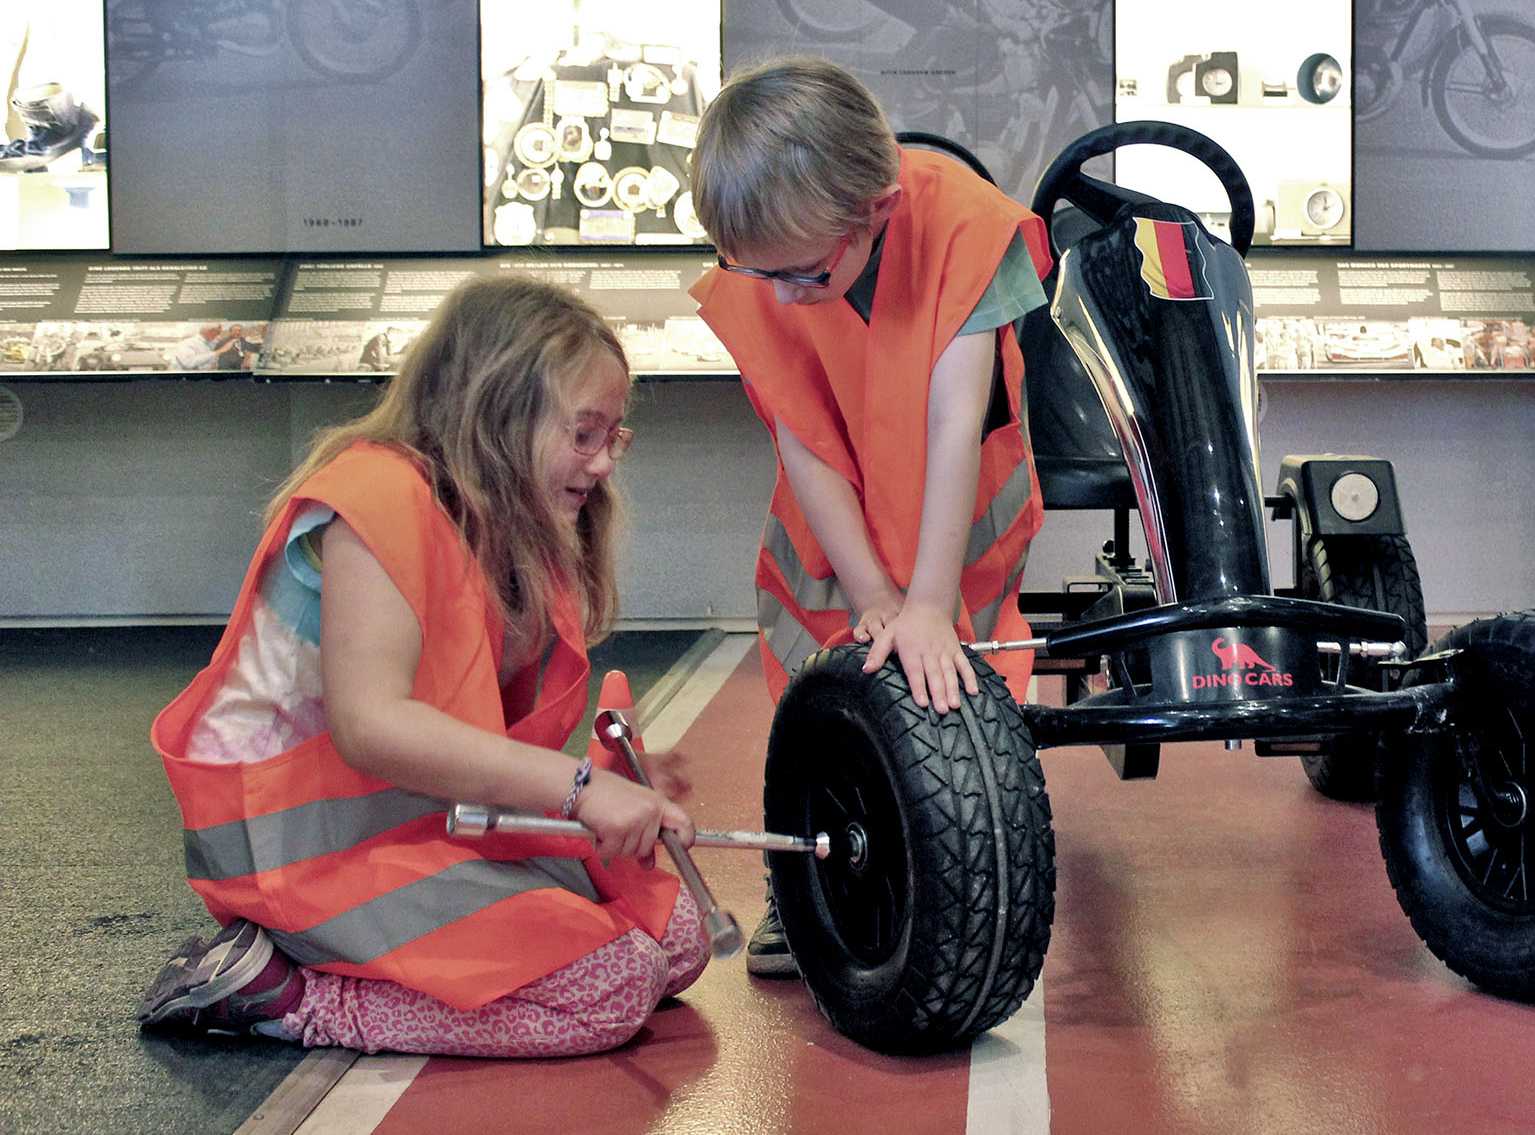 Zwei Kinder beim Reifenwechseln eines Gokarts im Museum Industriekultur | Fotoaufnahme von Thomas Ruppenstein